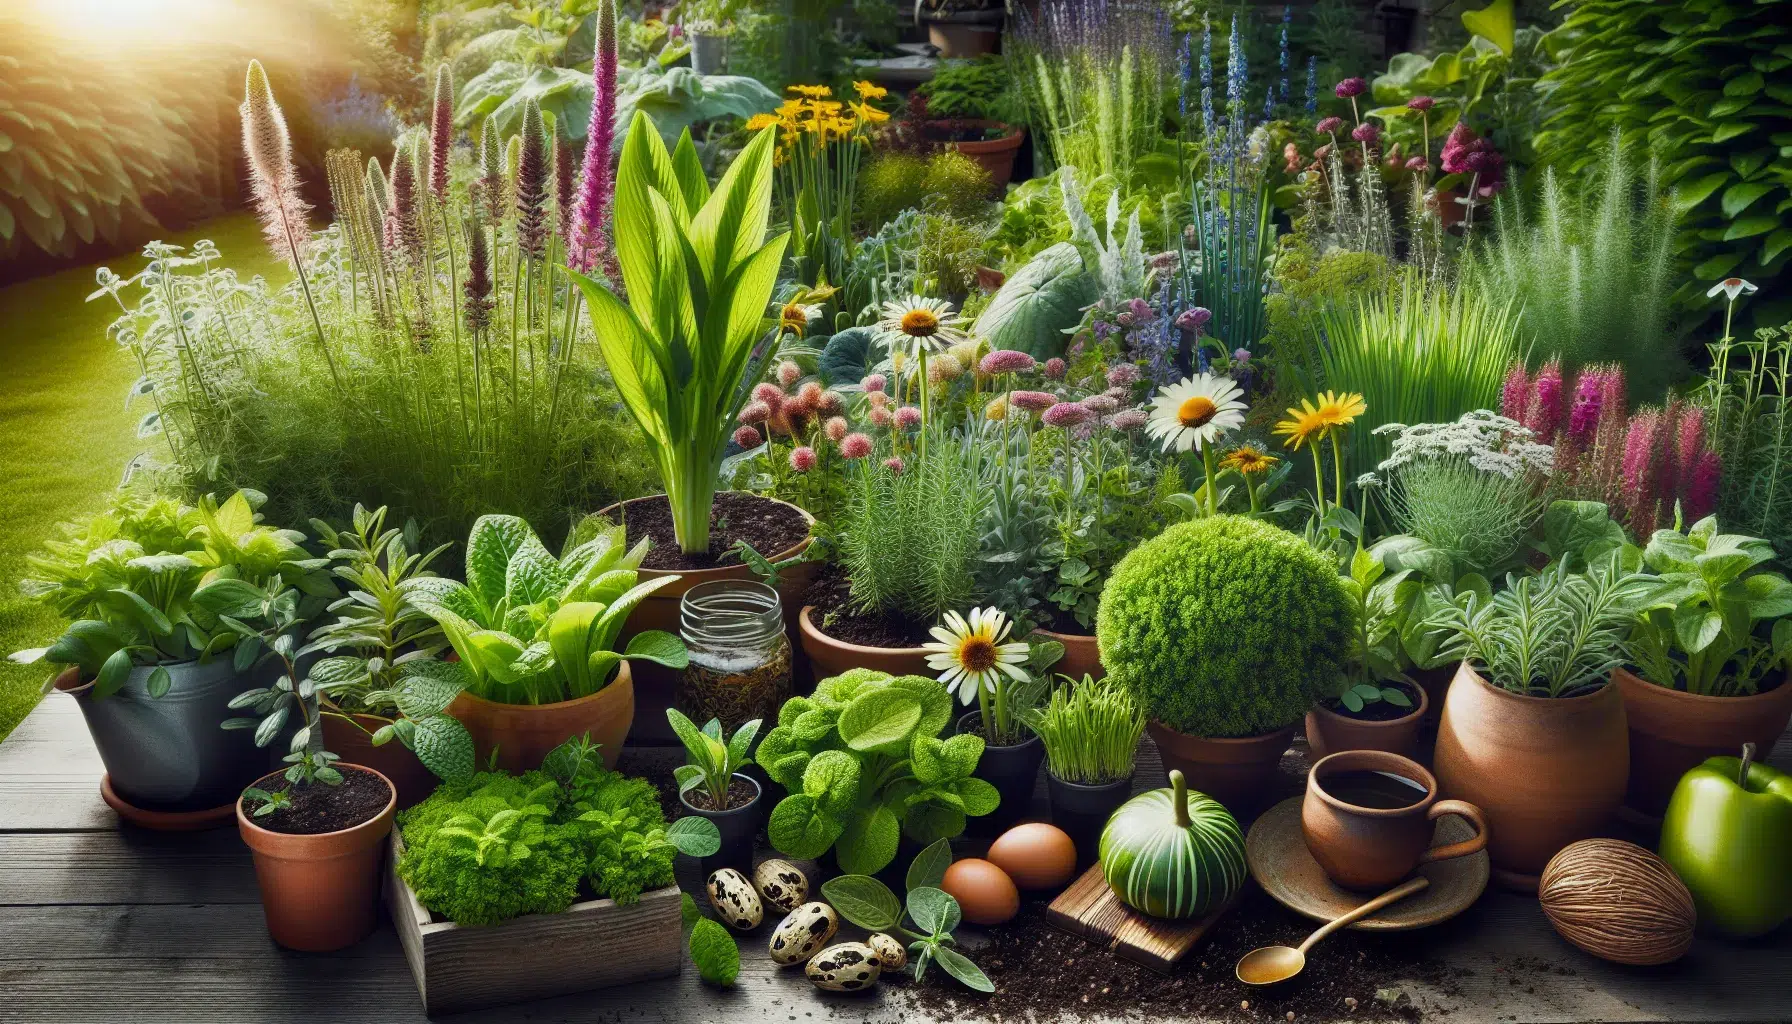 Imagen de diferentes plantas perennes en un huerto, destacando su papel beneficioso en la sostenibilidad del jardín.